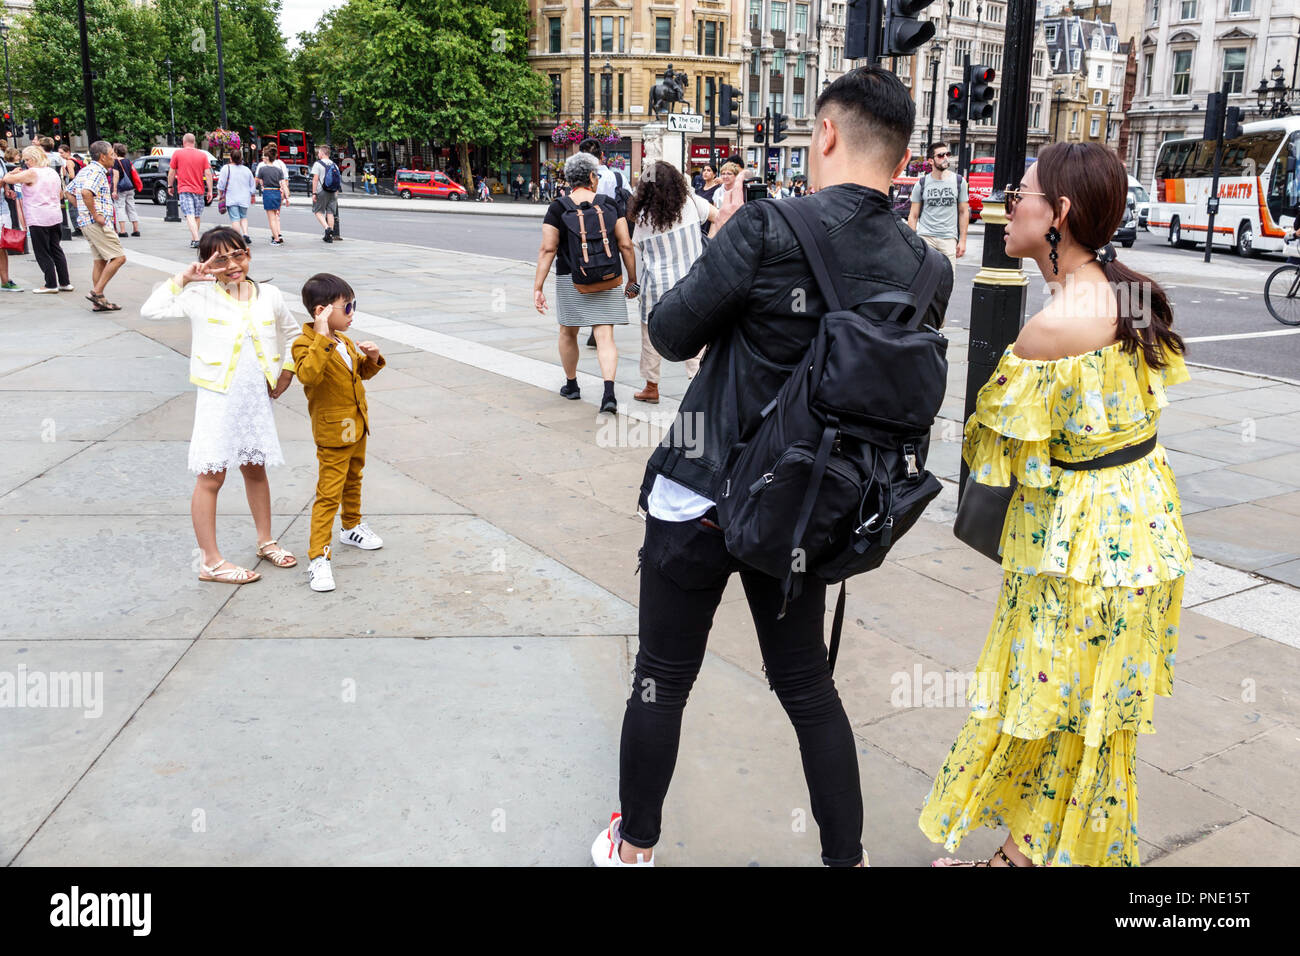 London England, Großbritannien, Großbritannien Großbritannien, Trafalgar Square, öffentliche plaza, Asiaten Ethnische Immigranten Minderheit, Erwachsene Erwachsene Frau wome Stockfoto